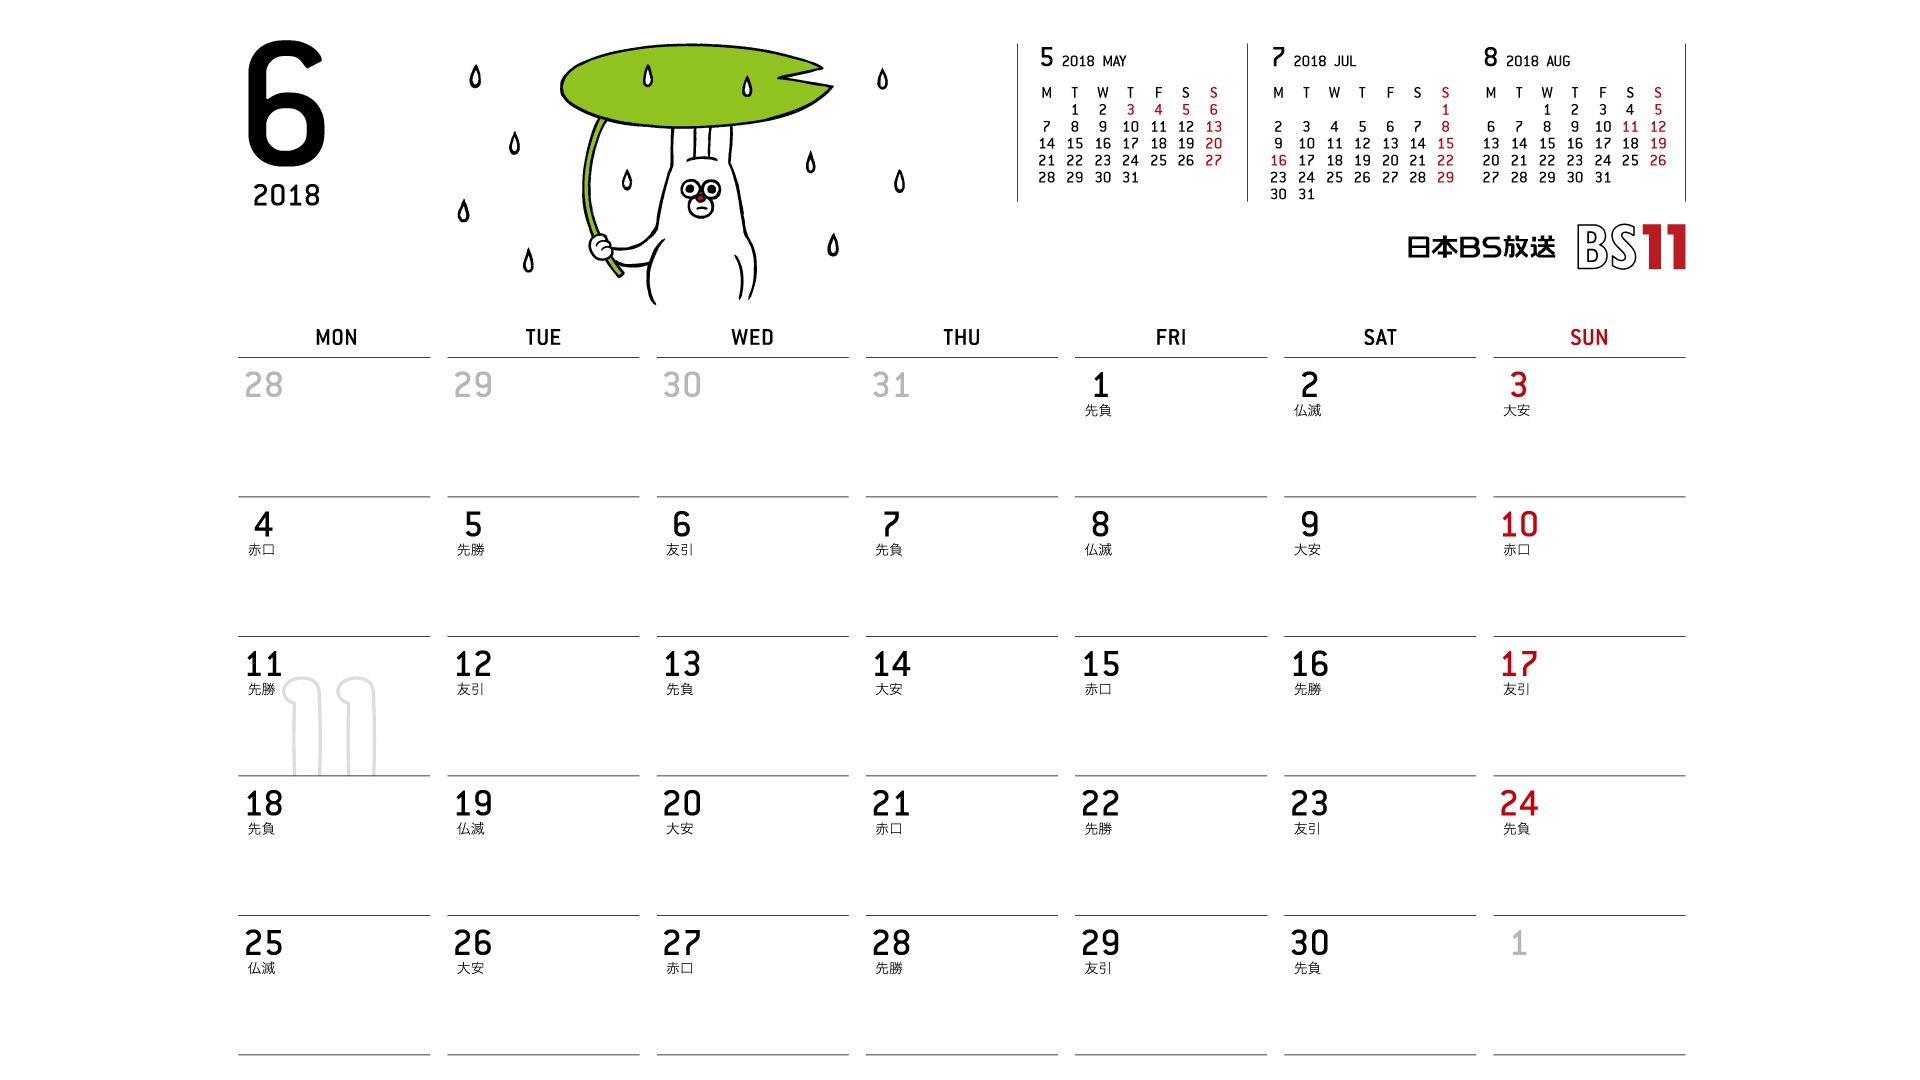 じゅういっちゃんのデジタルカレンダー2018年06月 Bs11 イレブン いつでも無料放送